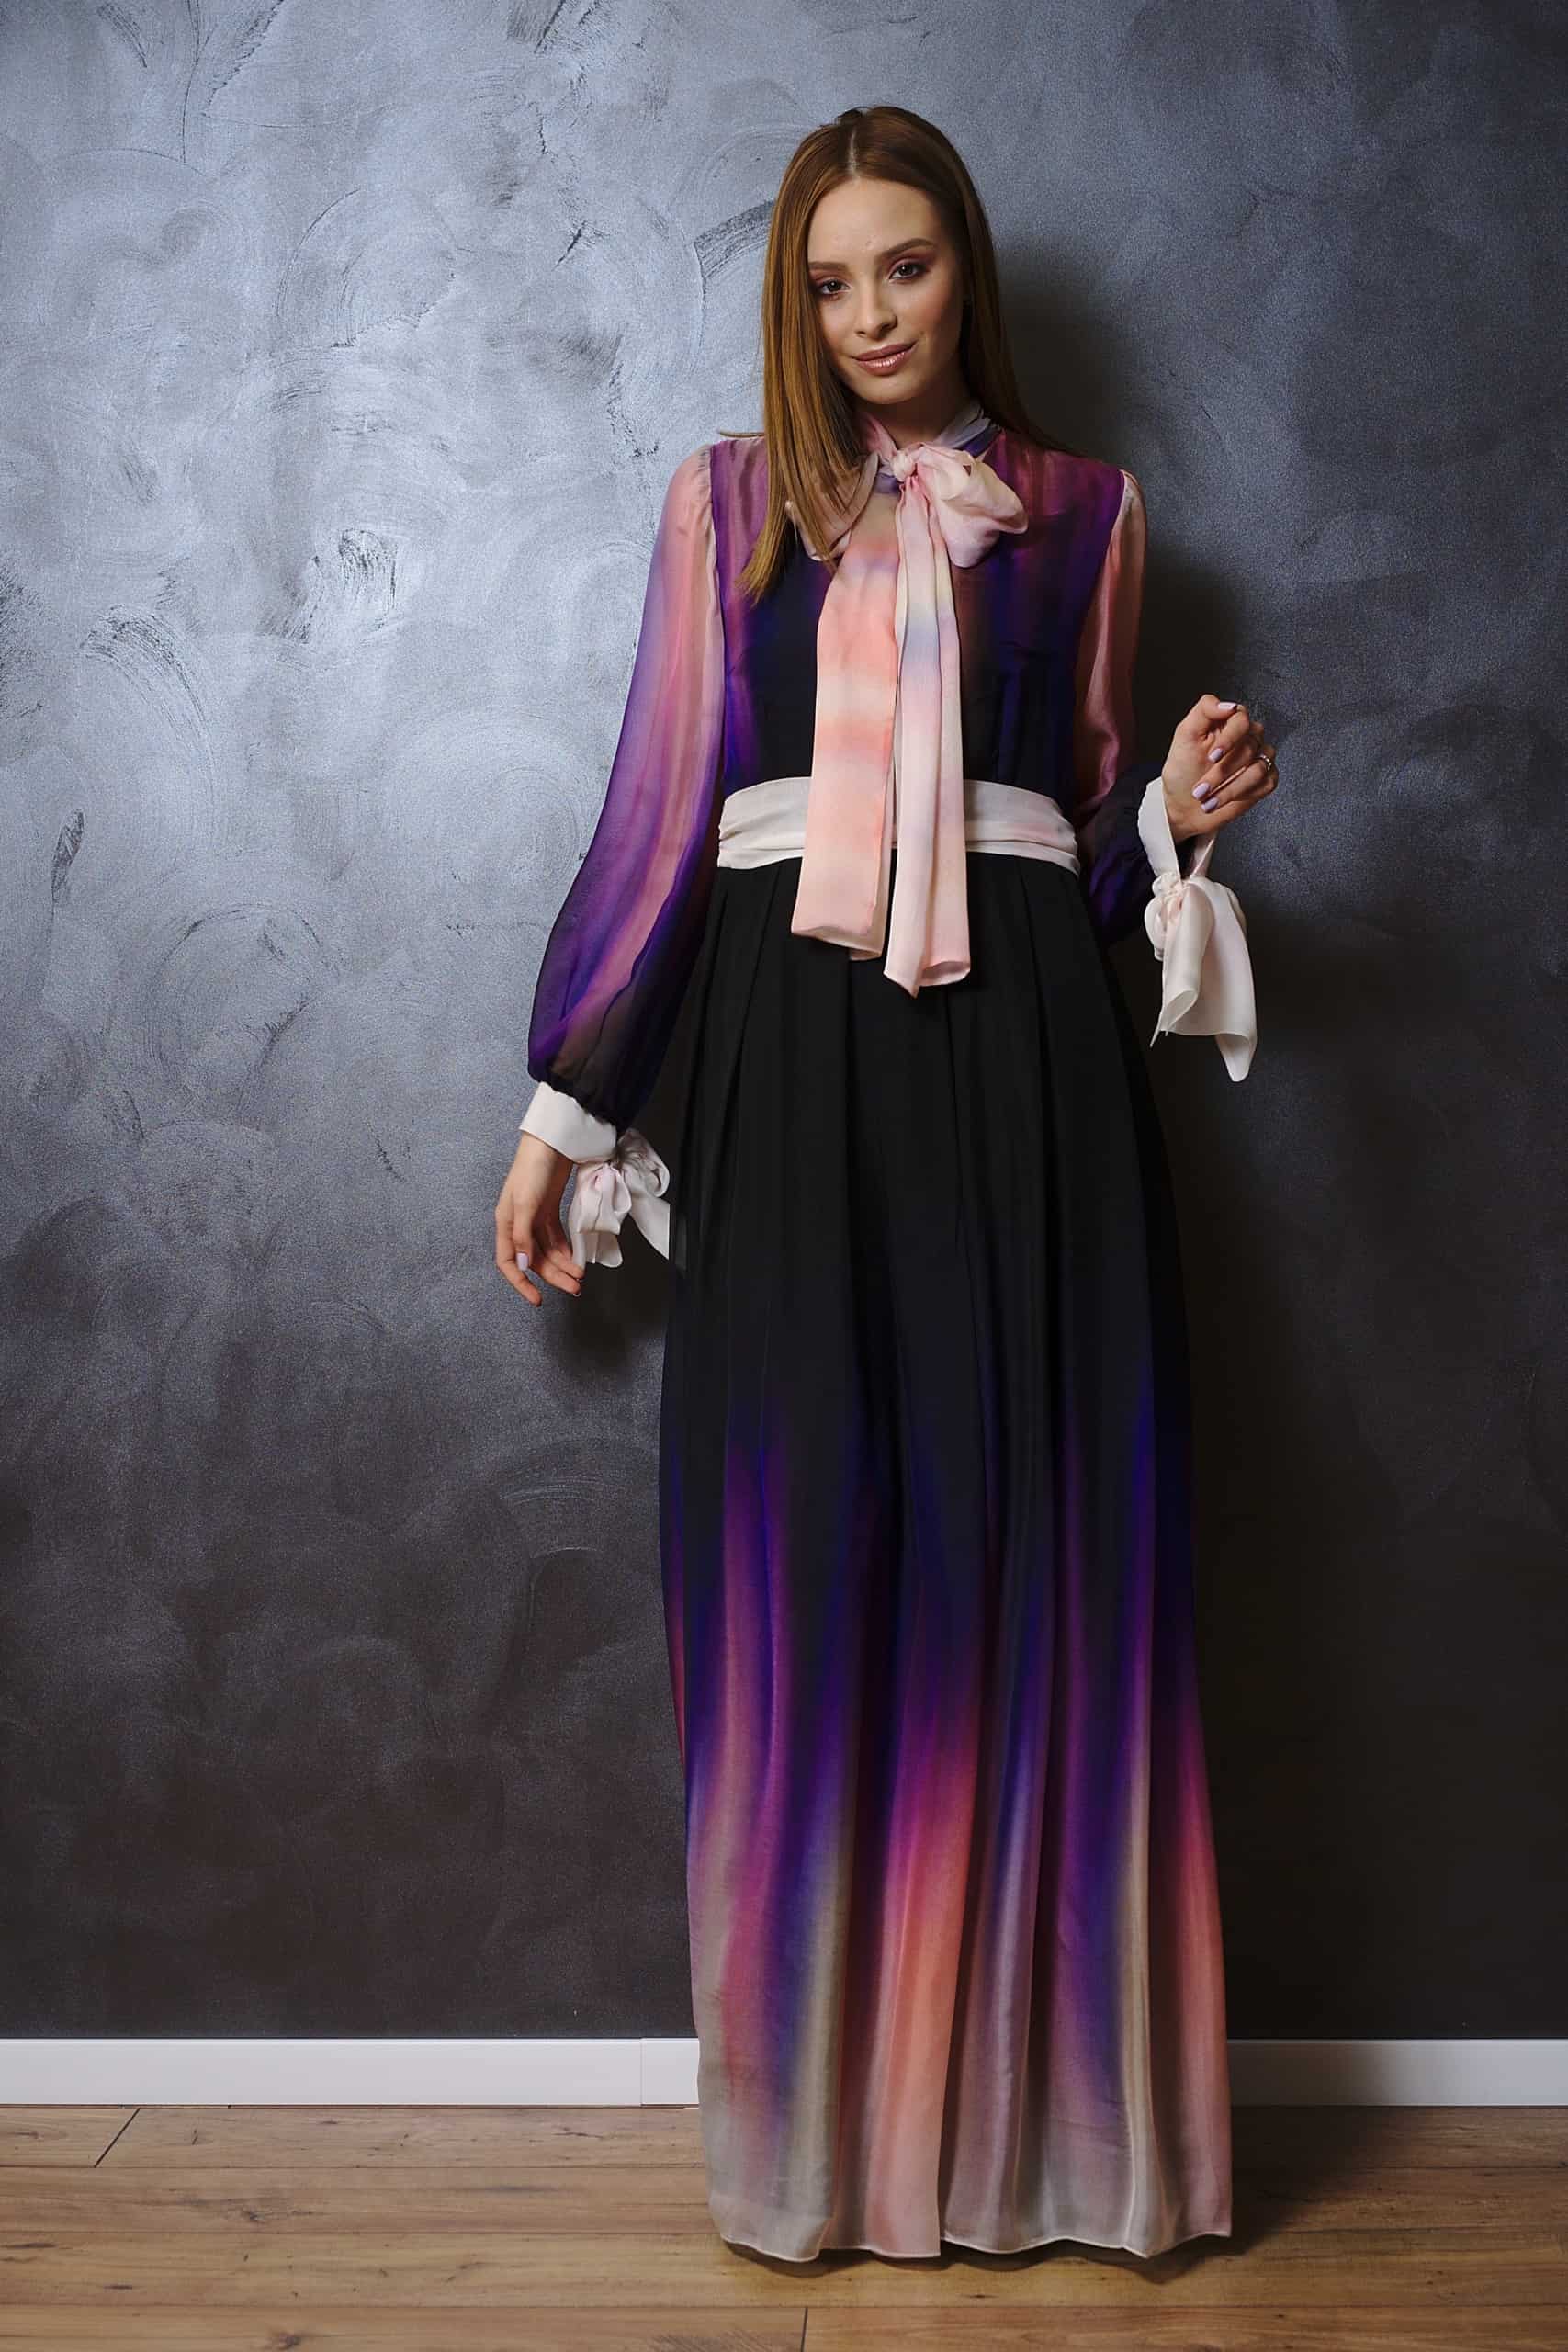 dress of silk veil - Creative Dress